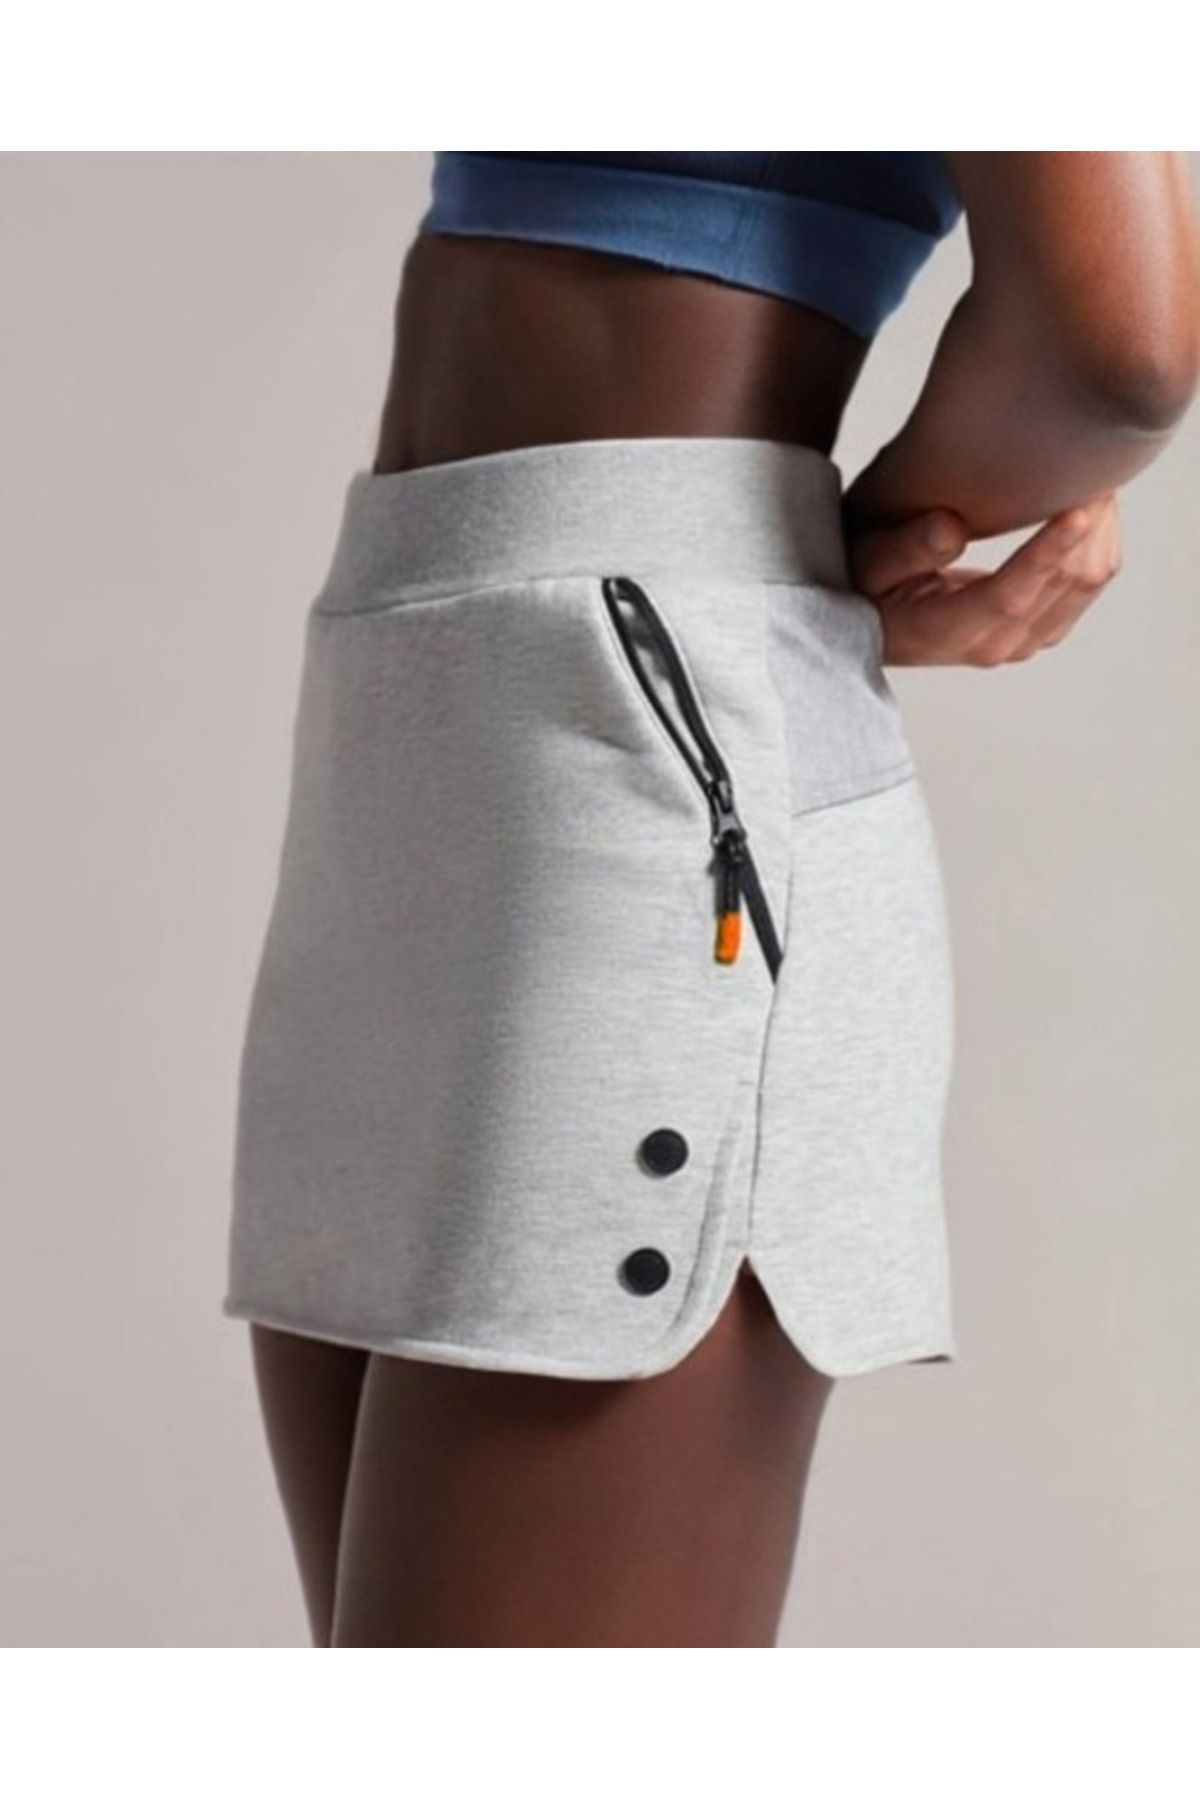 Nita Giyim Kadın Gri Yüksek Bel Çift Cepli Çıtçıt Detaylı Kısa Mini Örme Spor Günlük Şort Etek Tenis Eteği